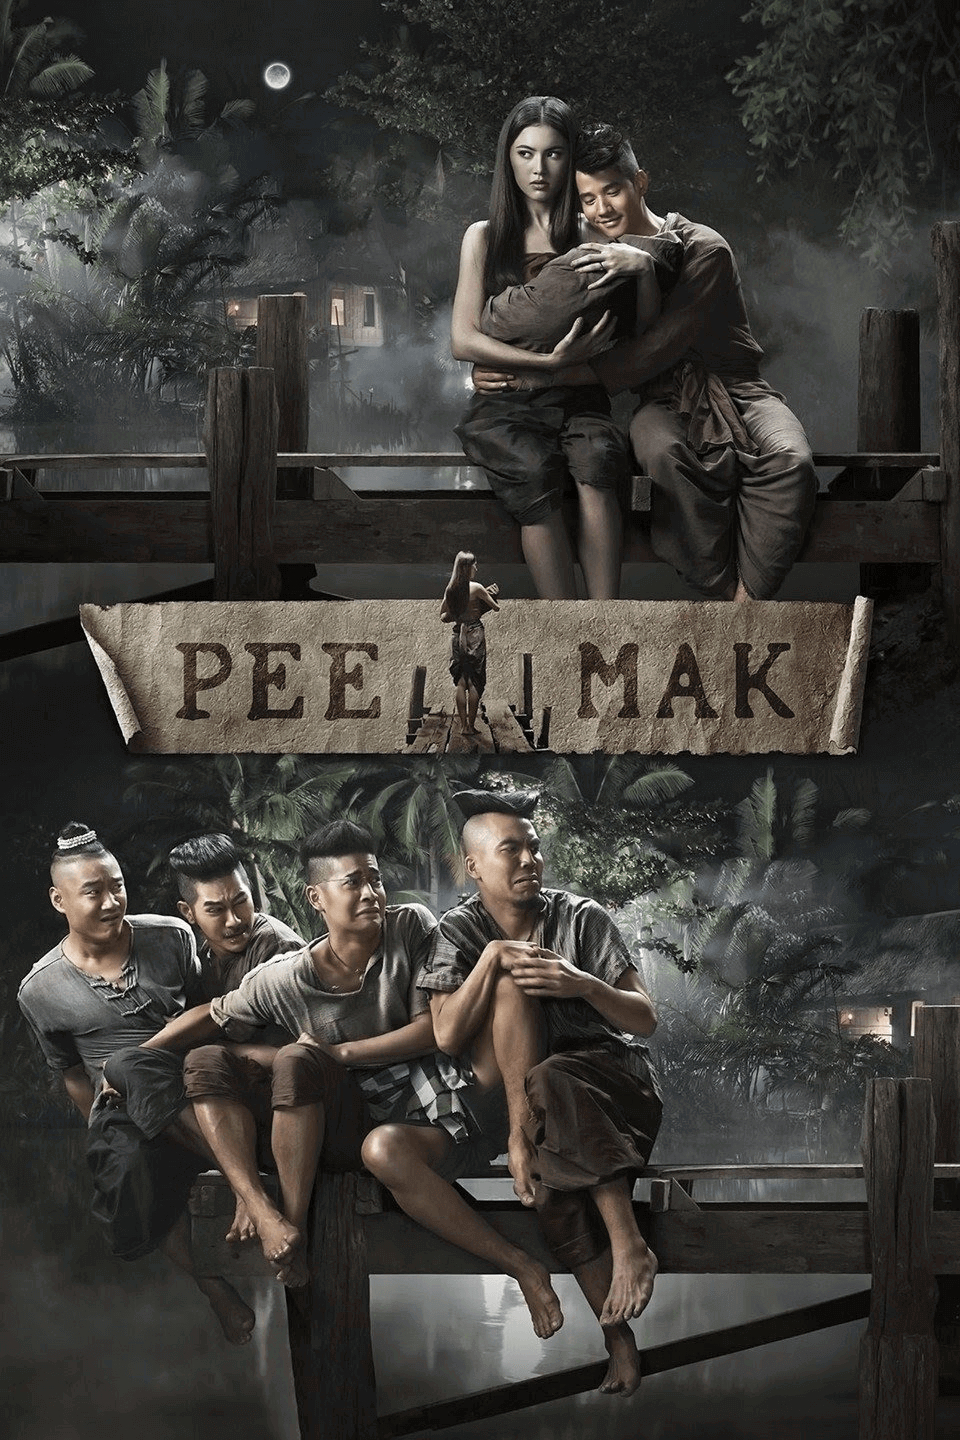 Phim Thái Lan hoặc nhất về tình yêu: Tình người duyên quỷ - Pee Mak (2013)